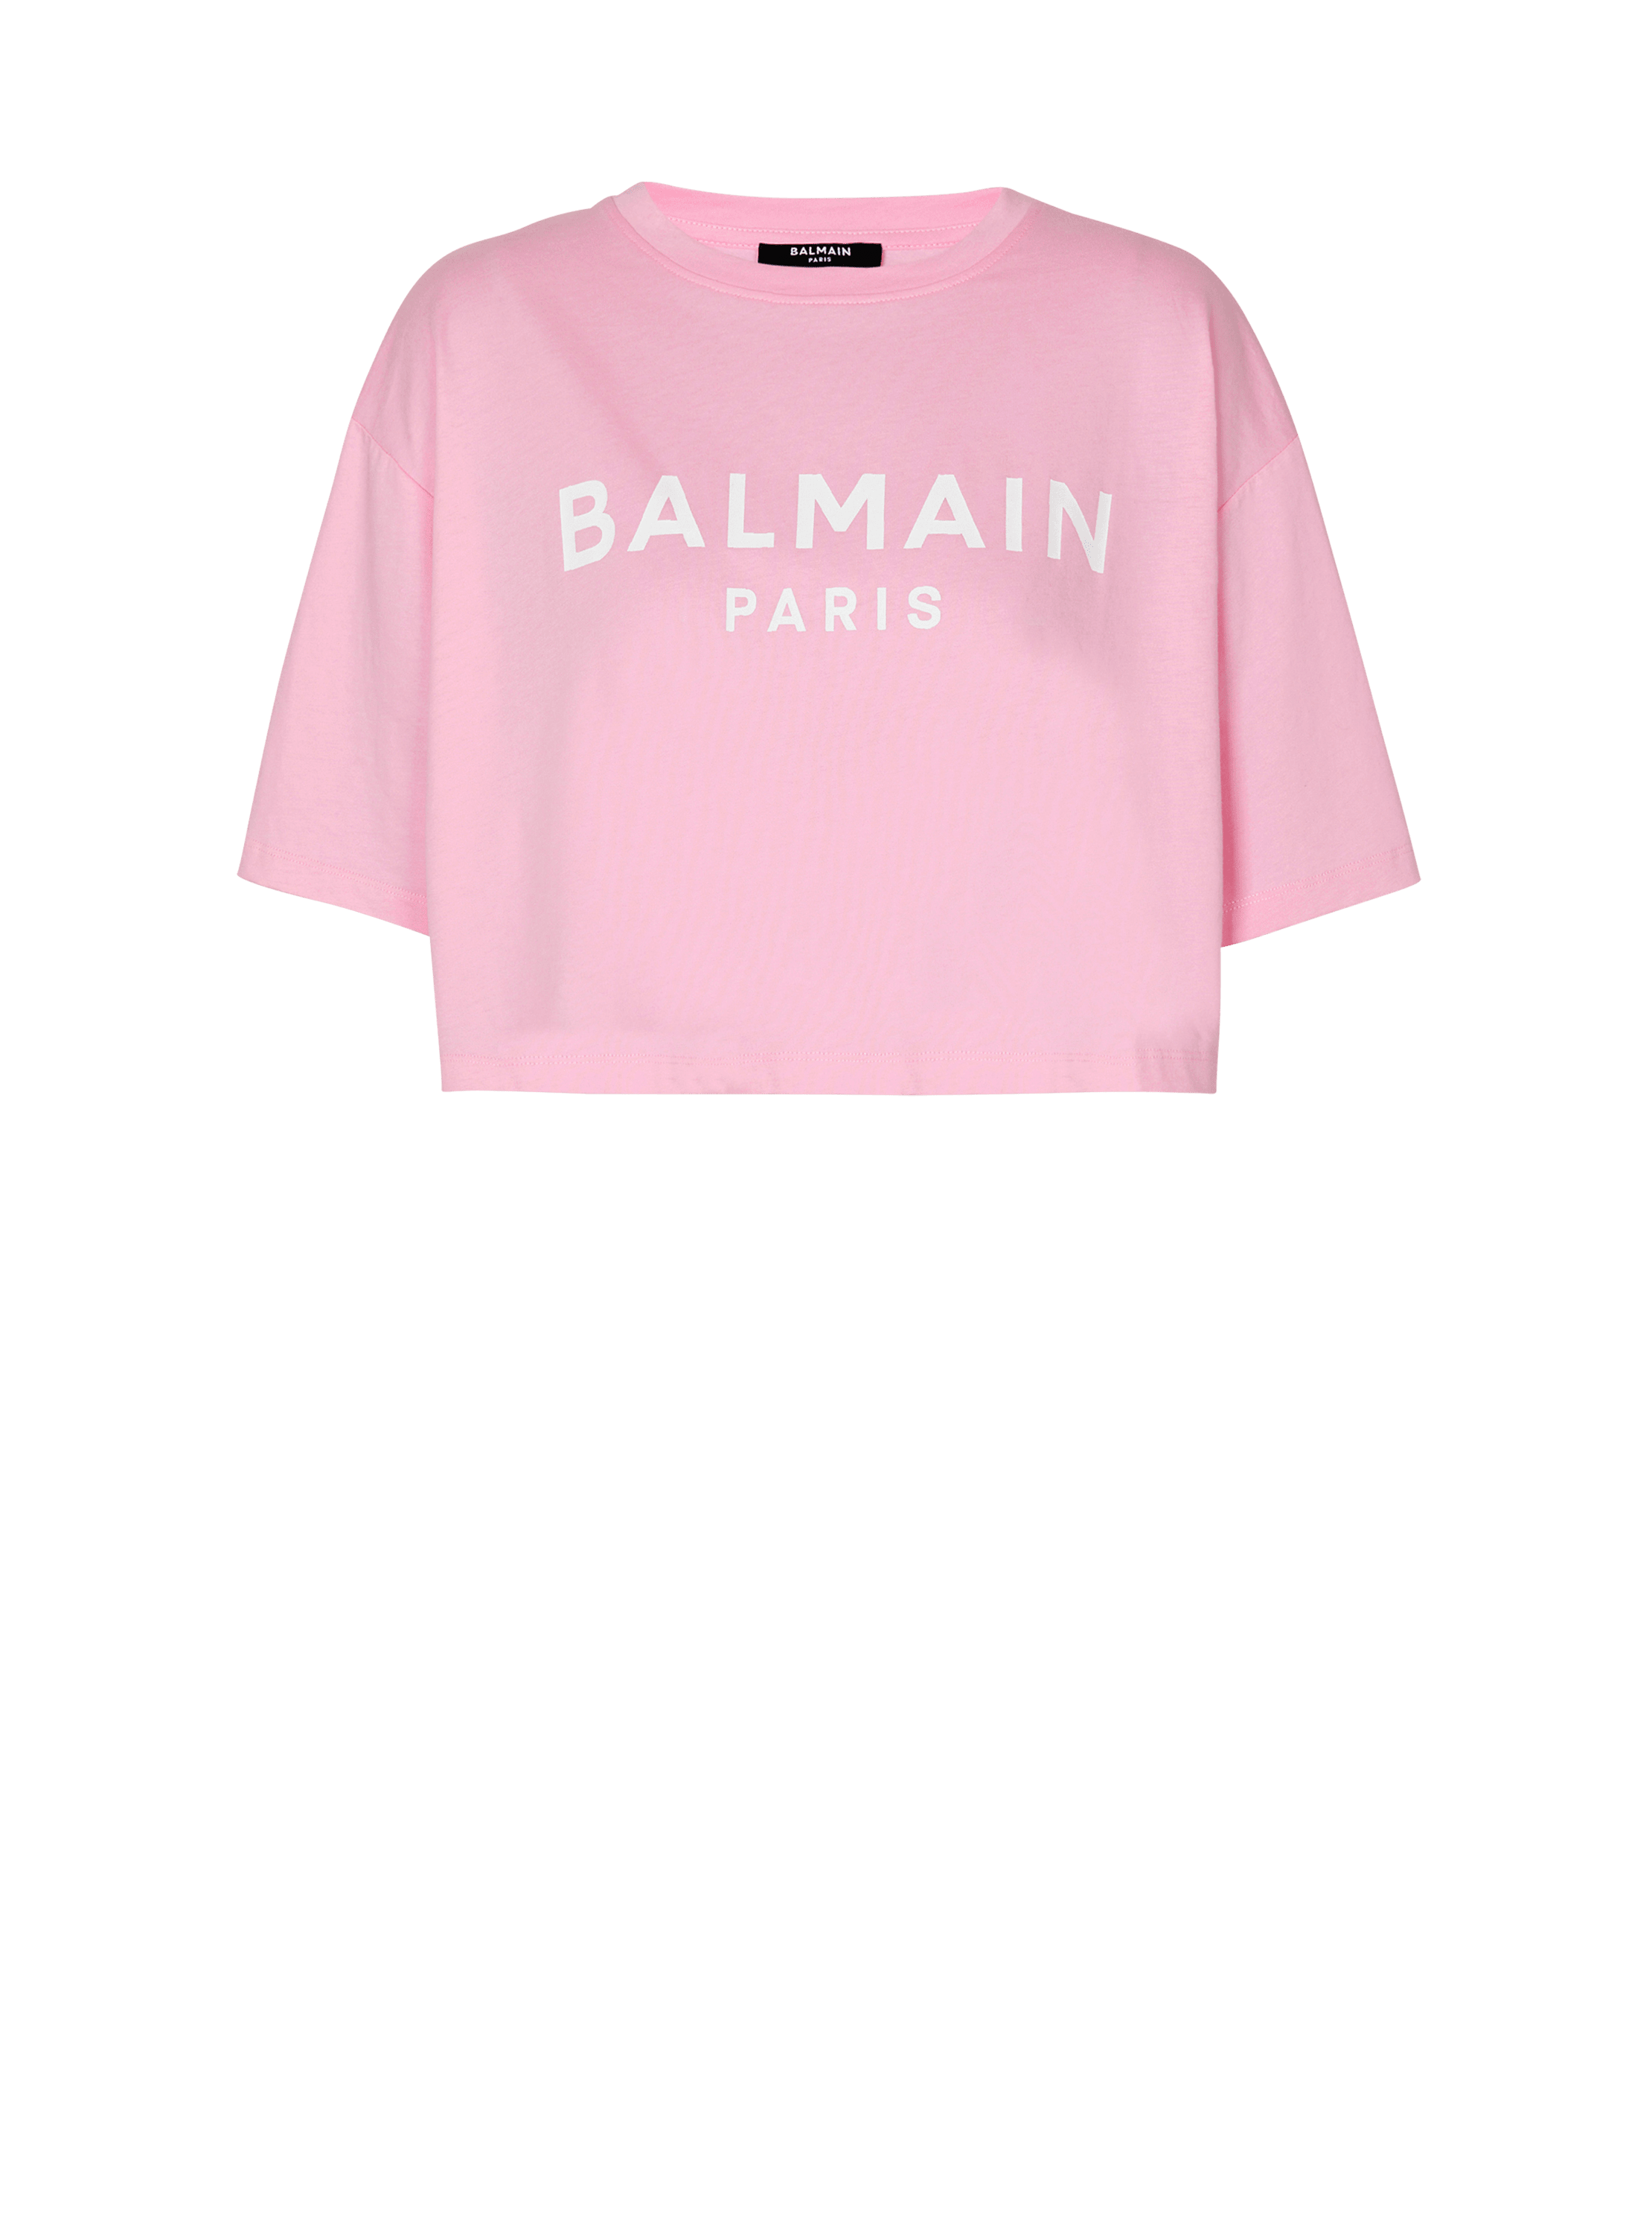 Balmain Paris T-shirt, pink, hi-res